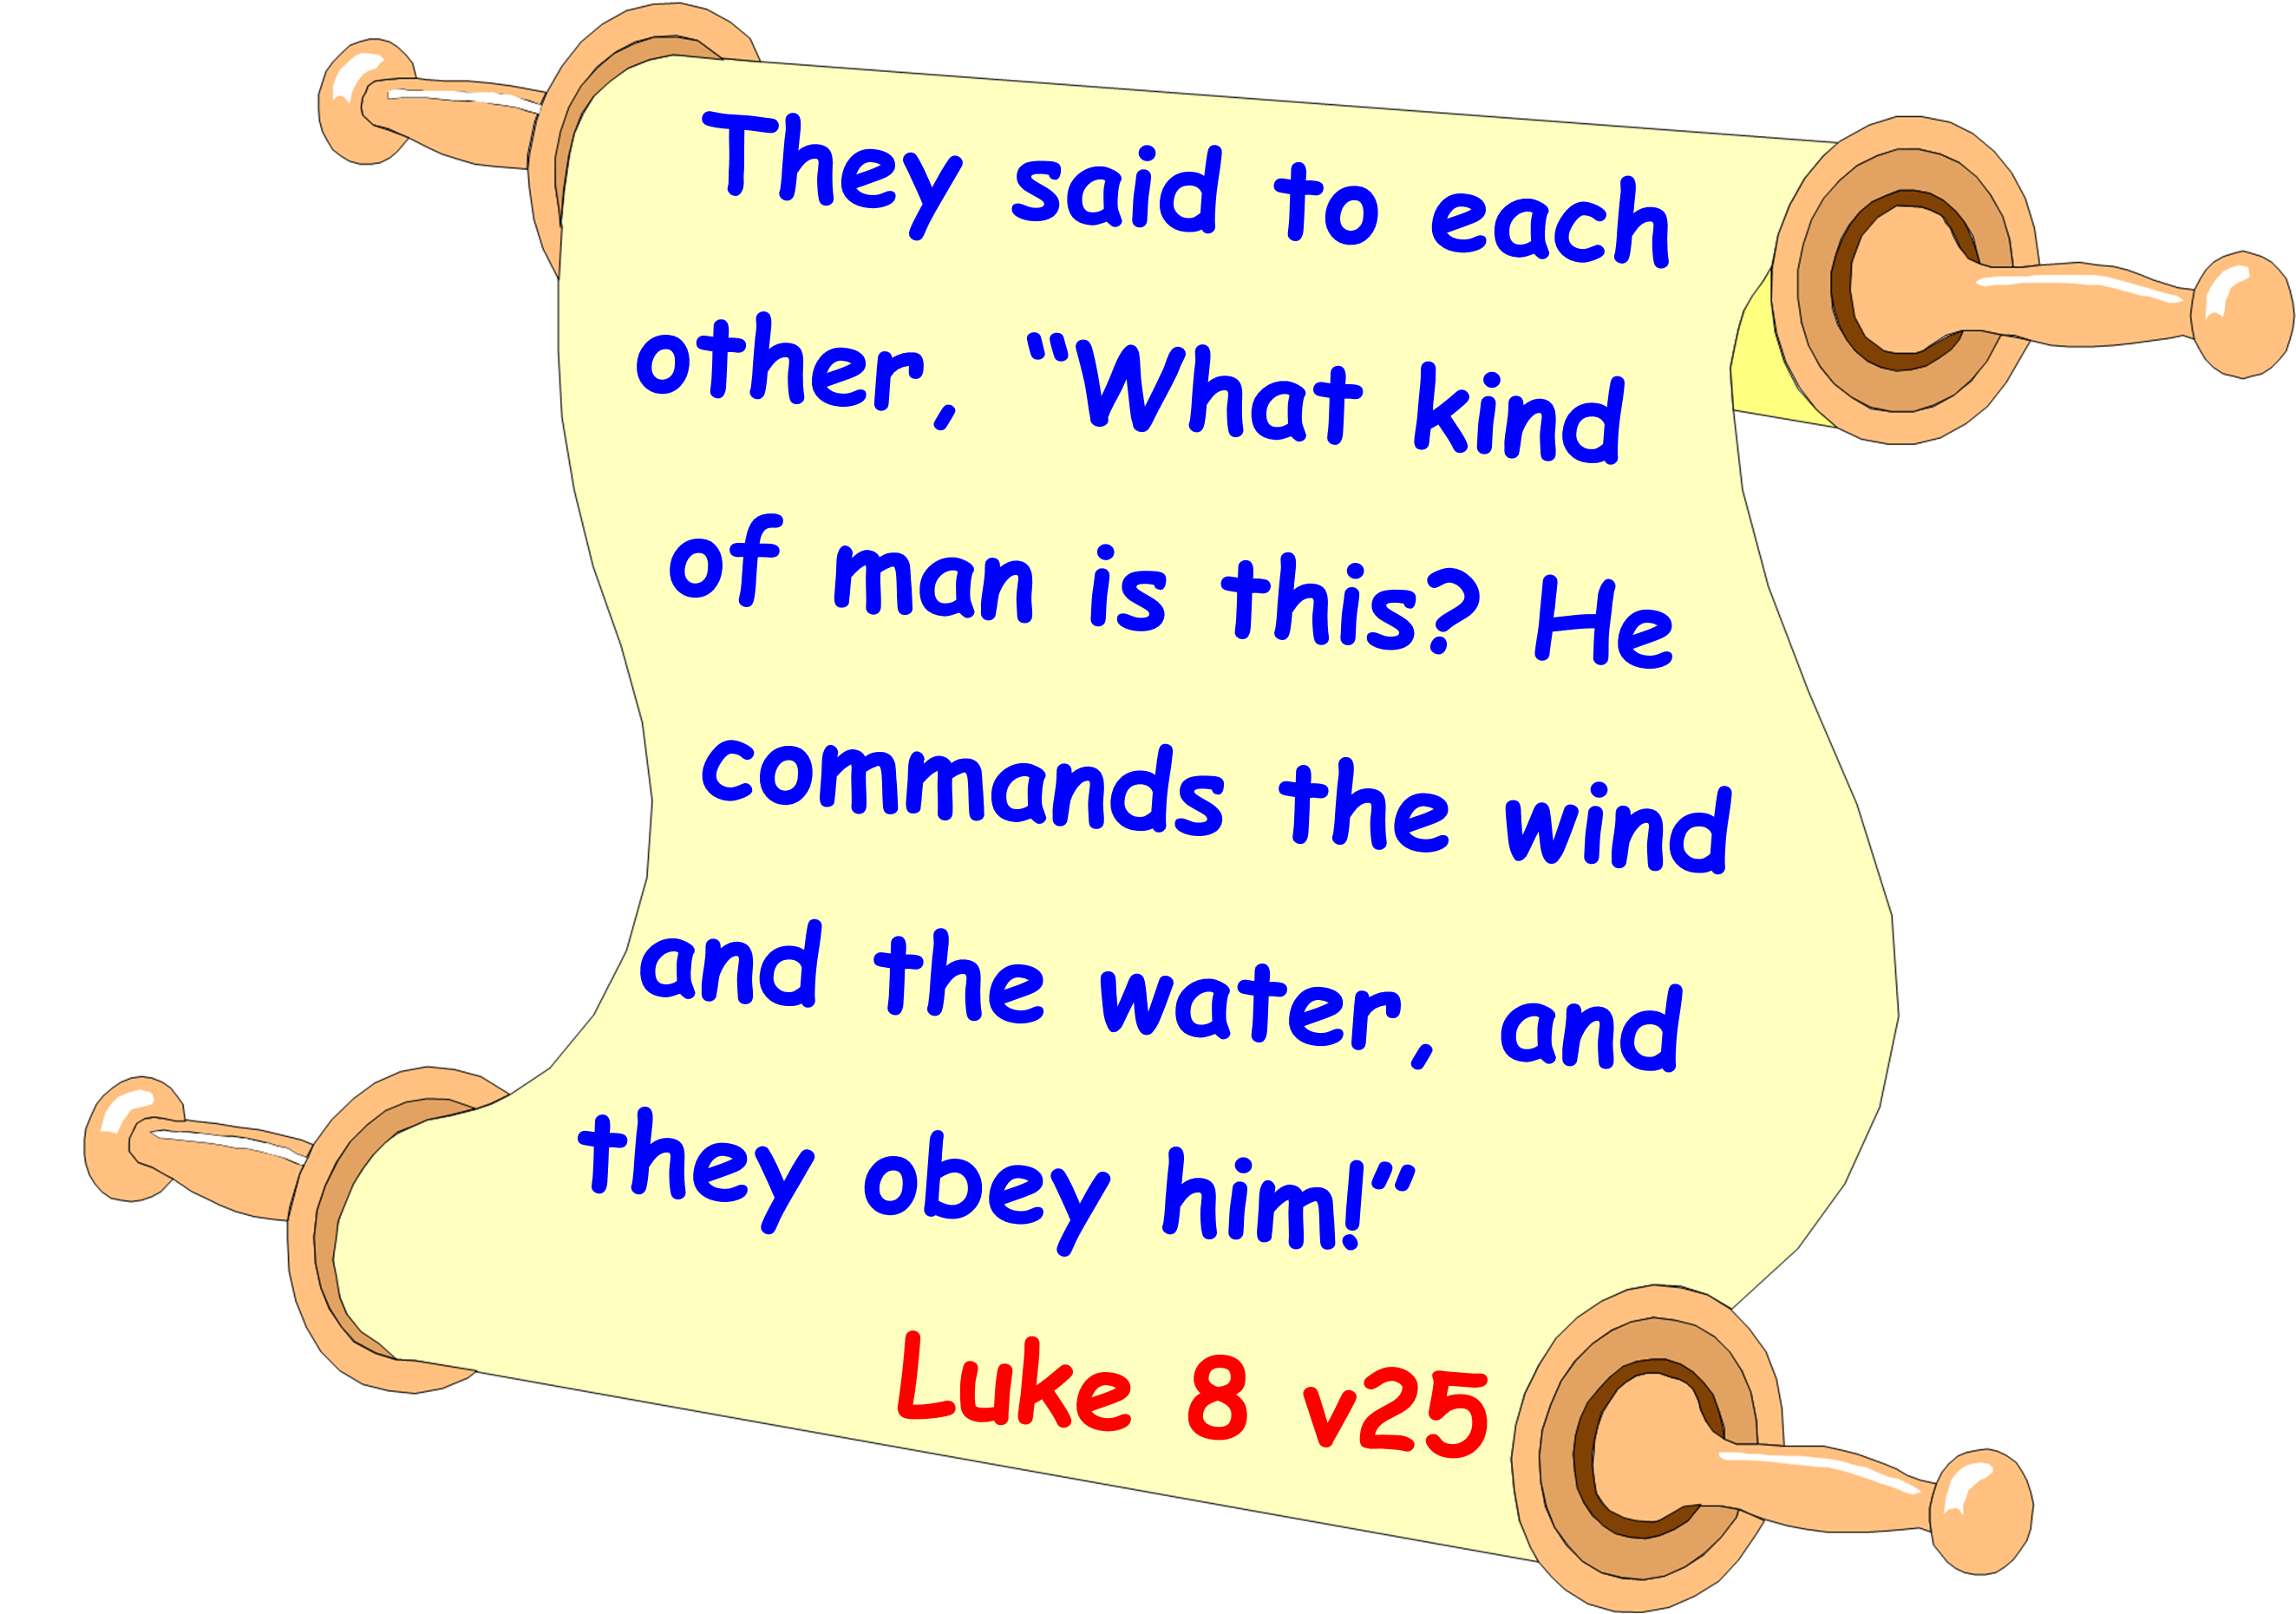 Memory verse Luke 8v25